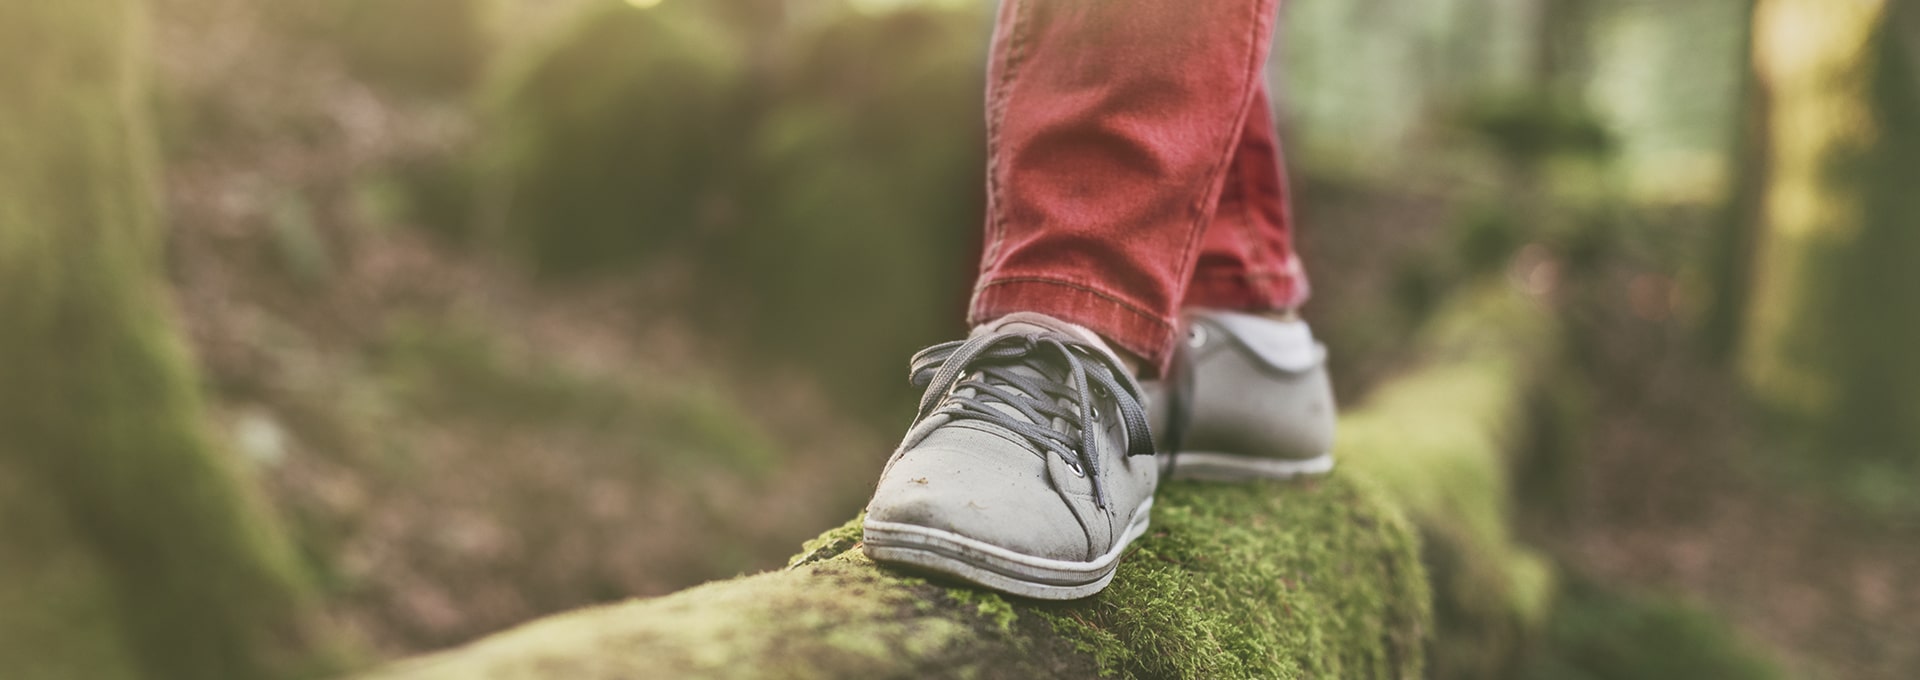 Ноги в серых ботинках балансируют на деревянном бревне в лесу